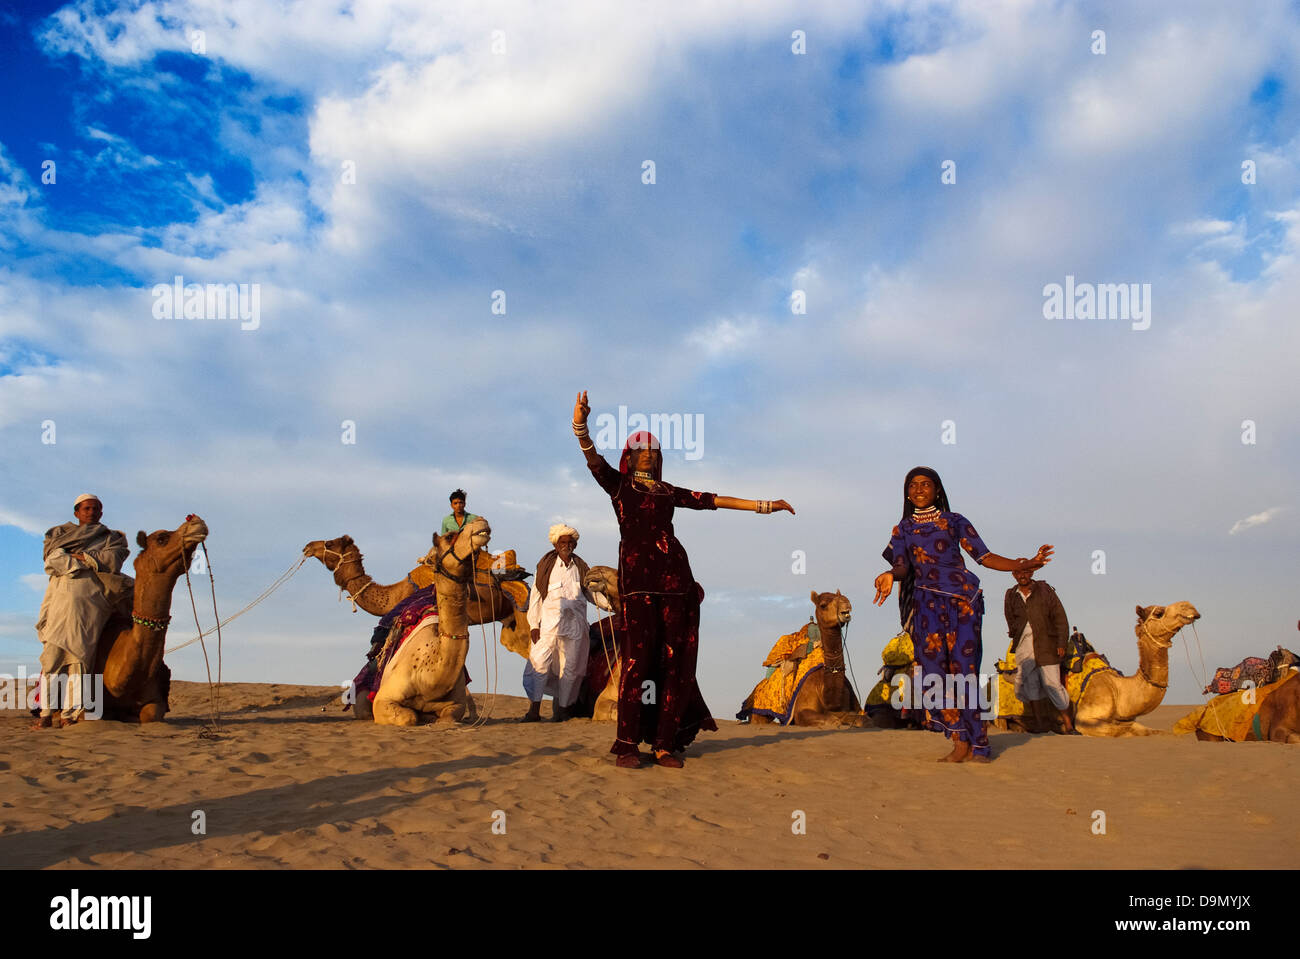 La danse culturelle à la Dune de sable de Sam à Jaisalmer, Inde. L'événement fait partie du Désert Festival. Banque D'Images